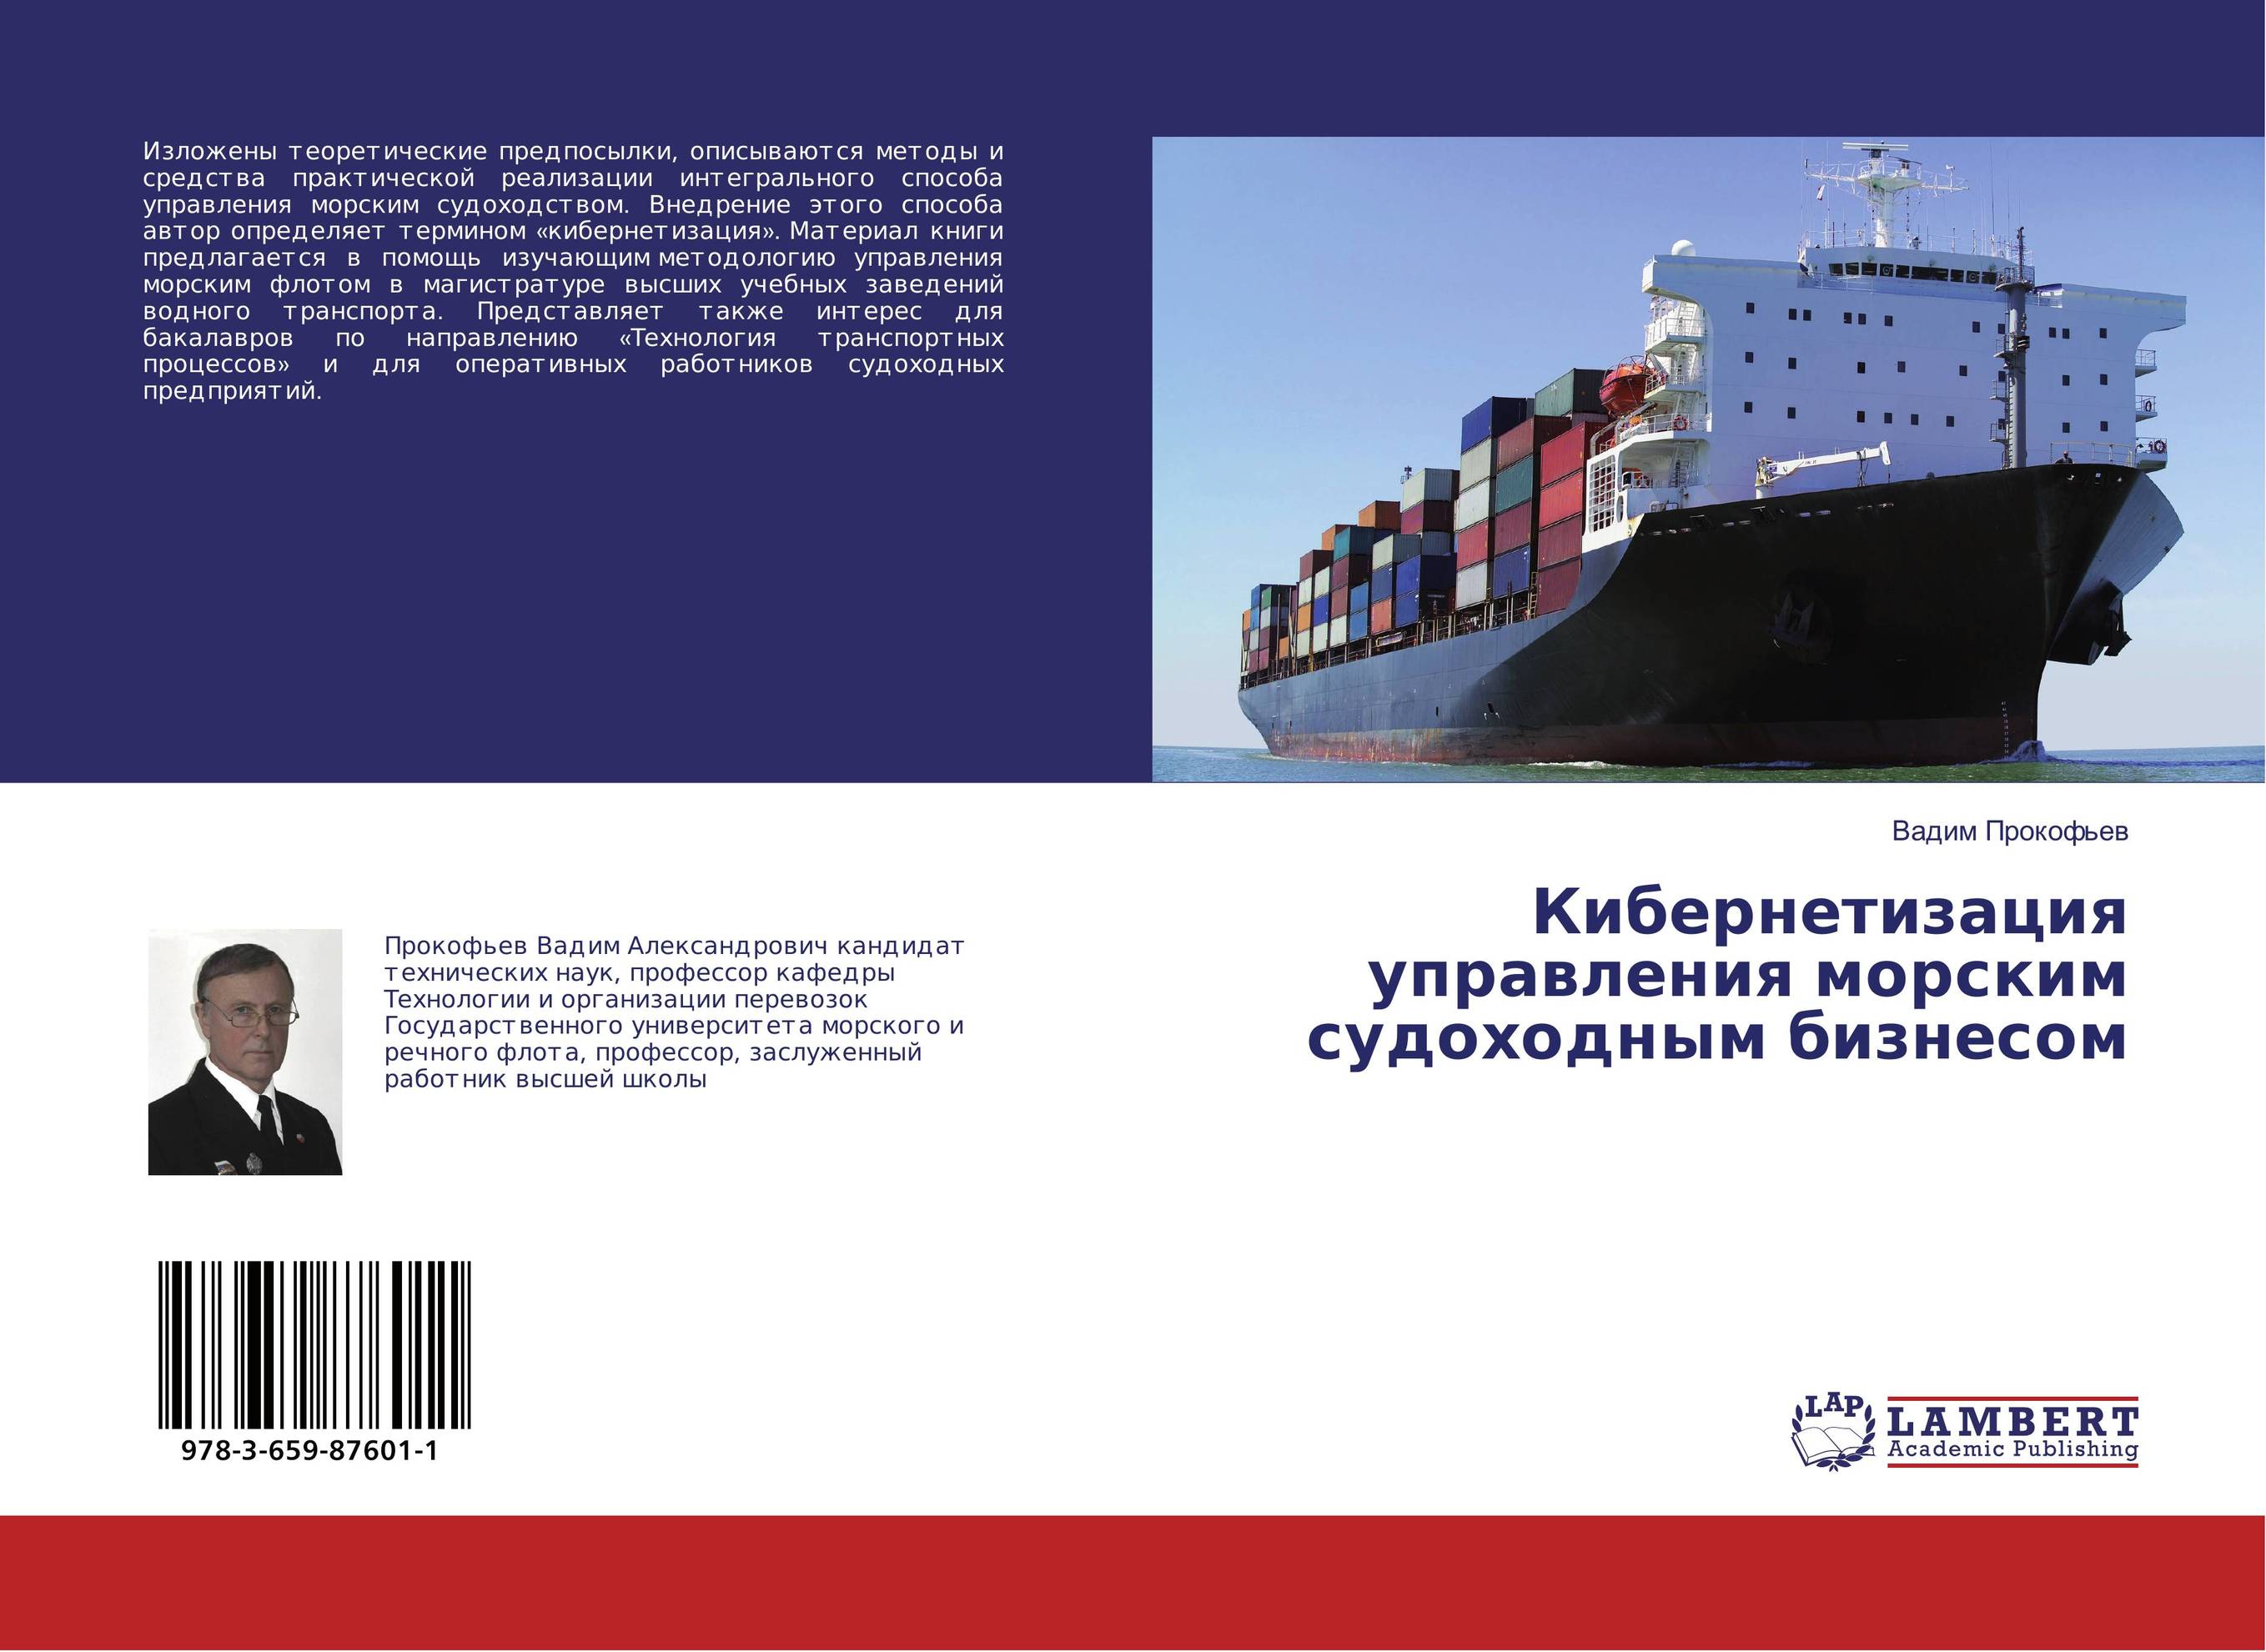 
        Кибернетизация управления морским судоходным бизнесом..
      